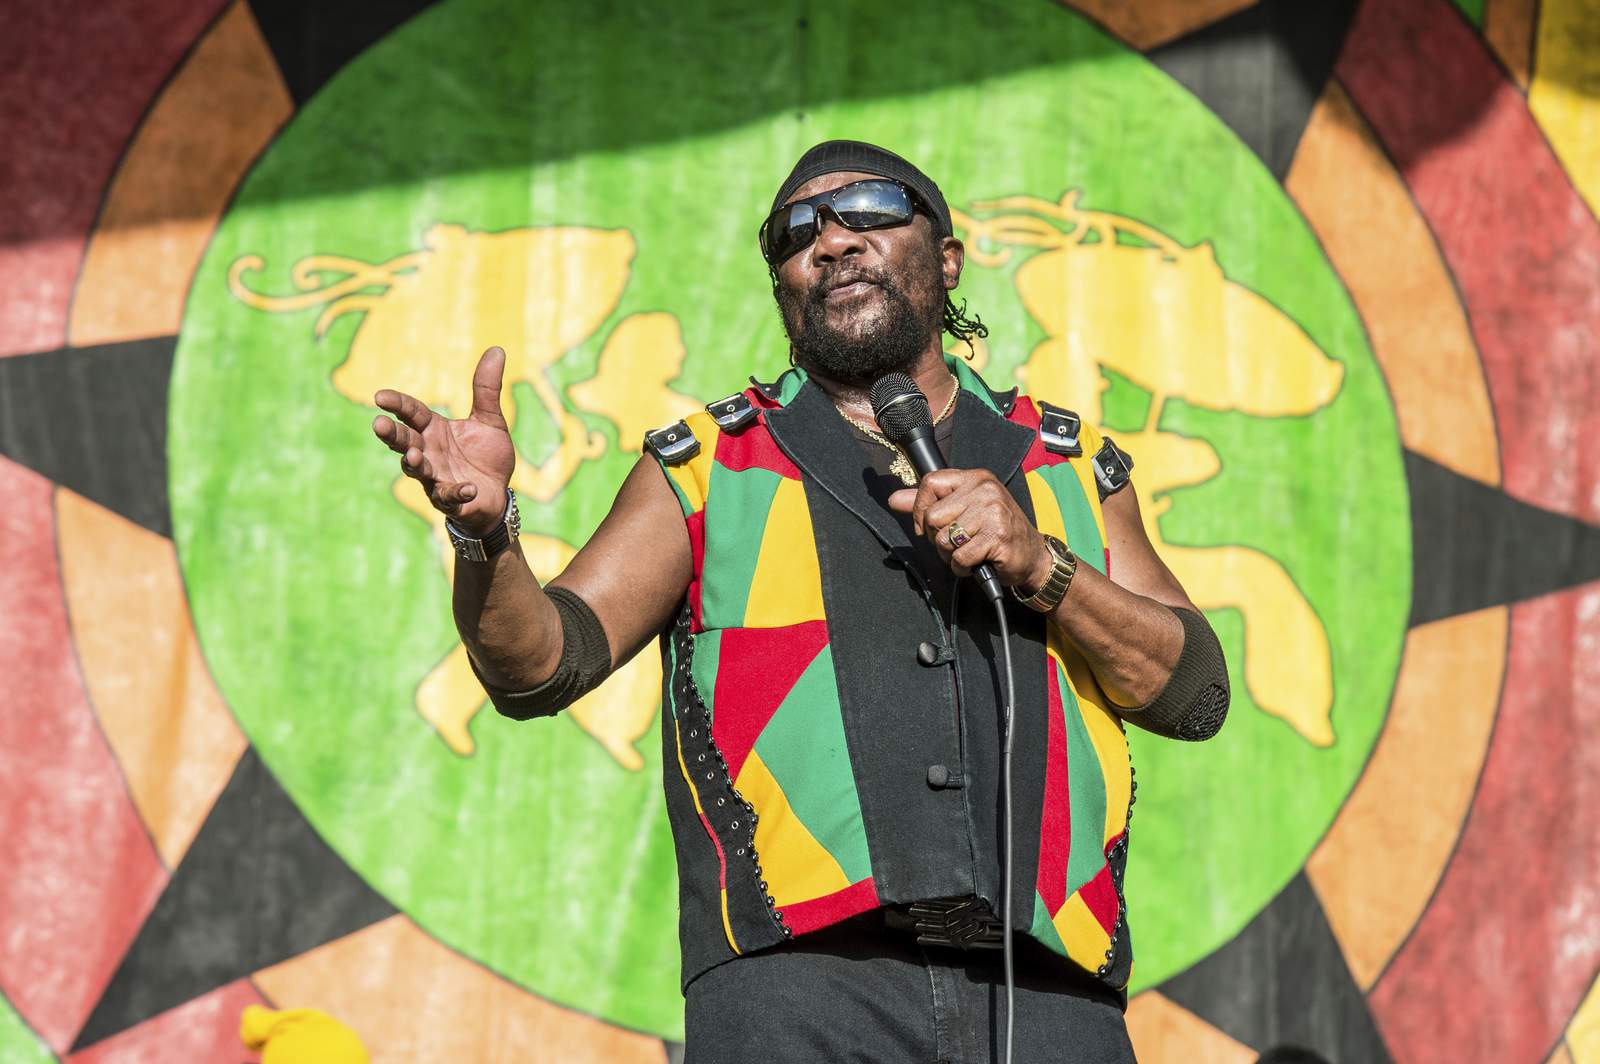 Toots Hibbert, beloved reggae star, dead at 77